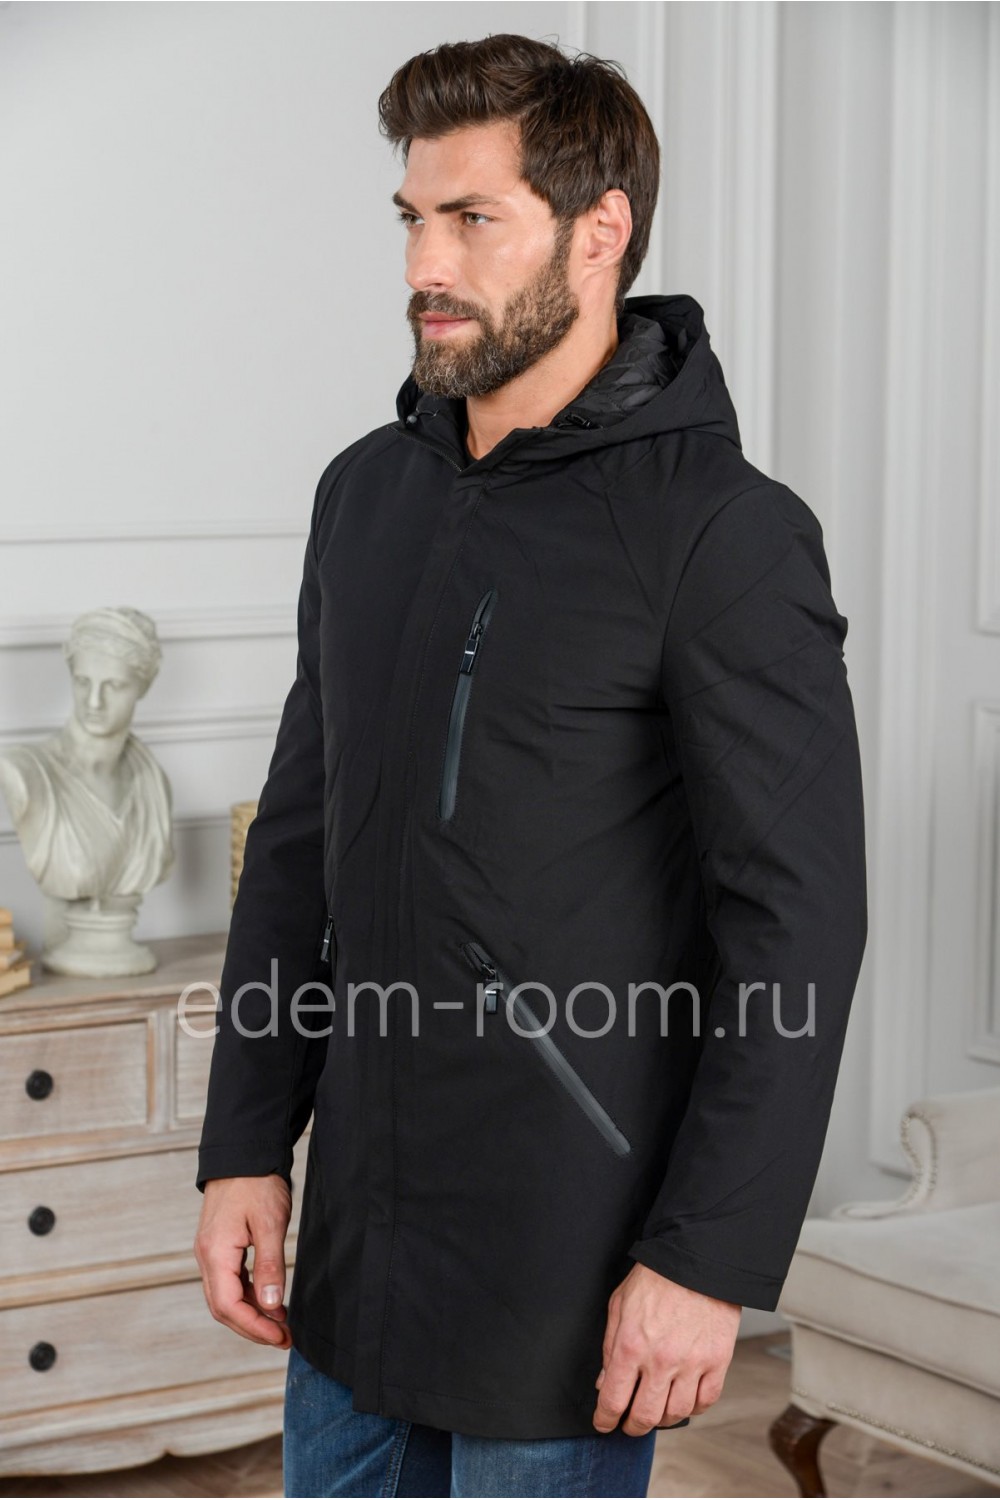 Чёрная мужская куртка с капюшоном